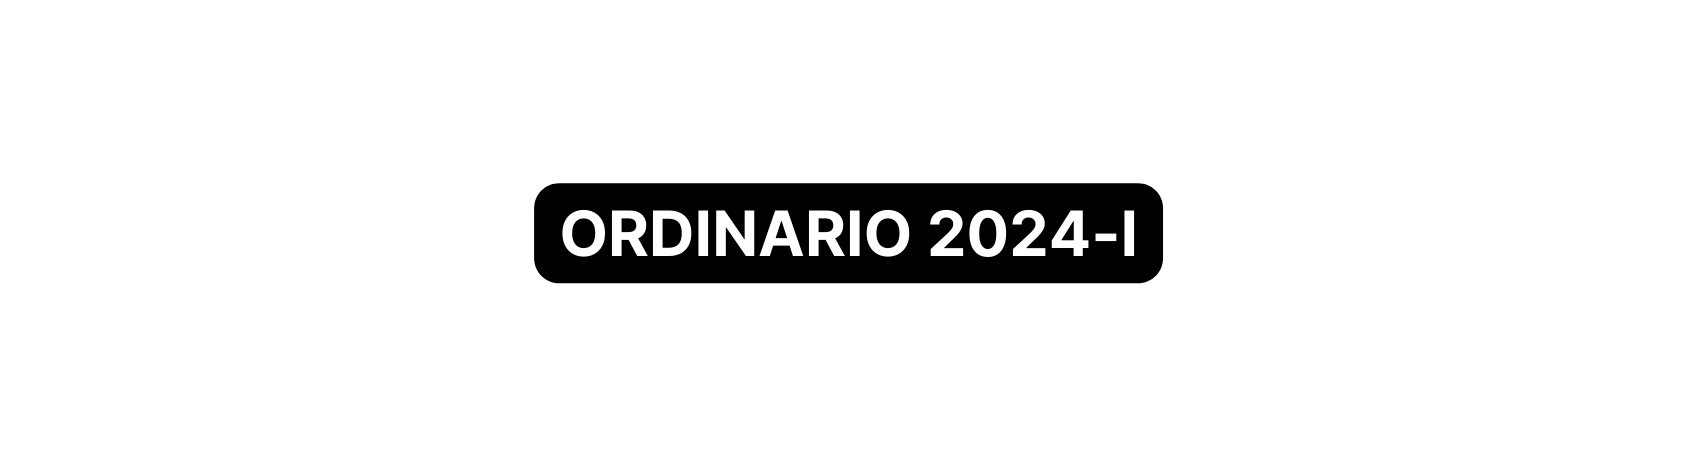 ORDINARIO 2024 I